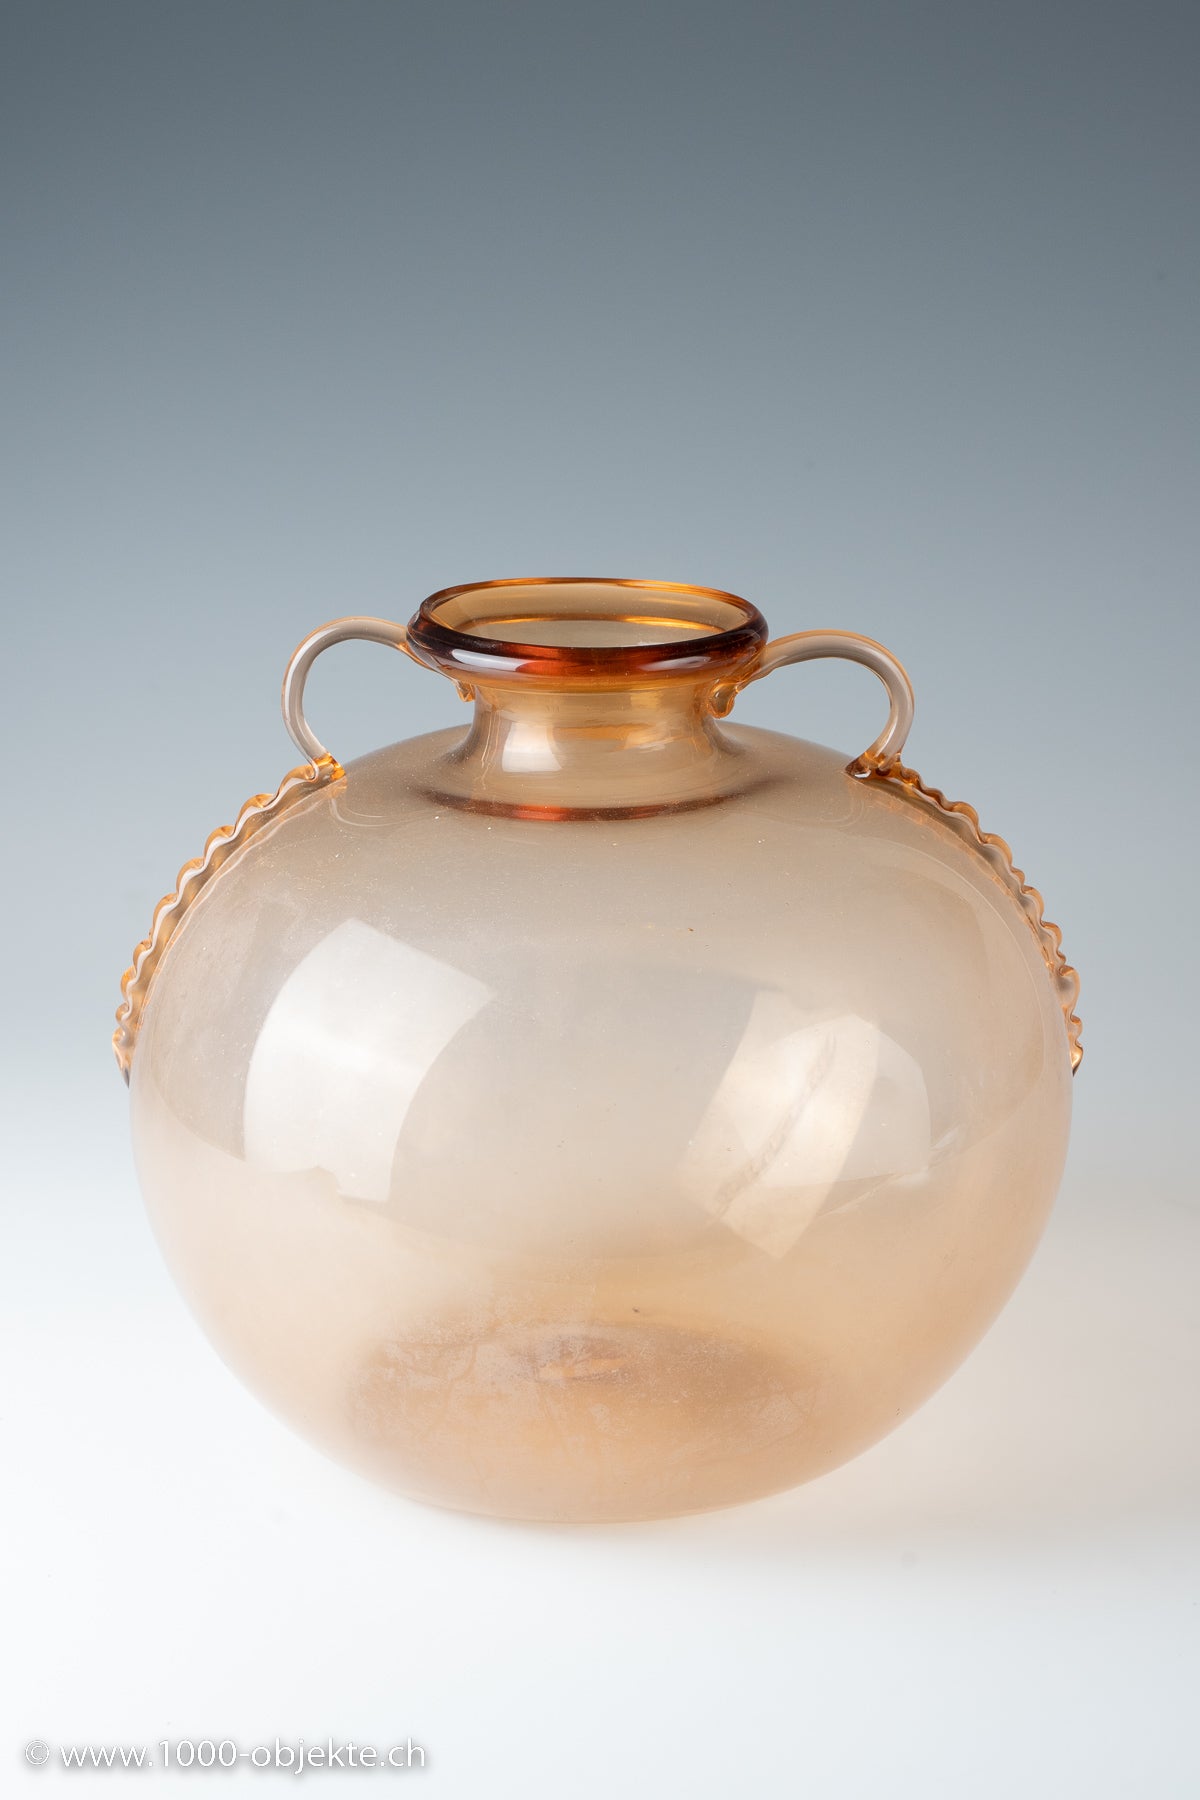 Vase "Vittorio Zecchin" for Cappelin, 1925-1930